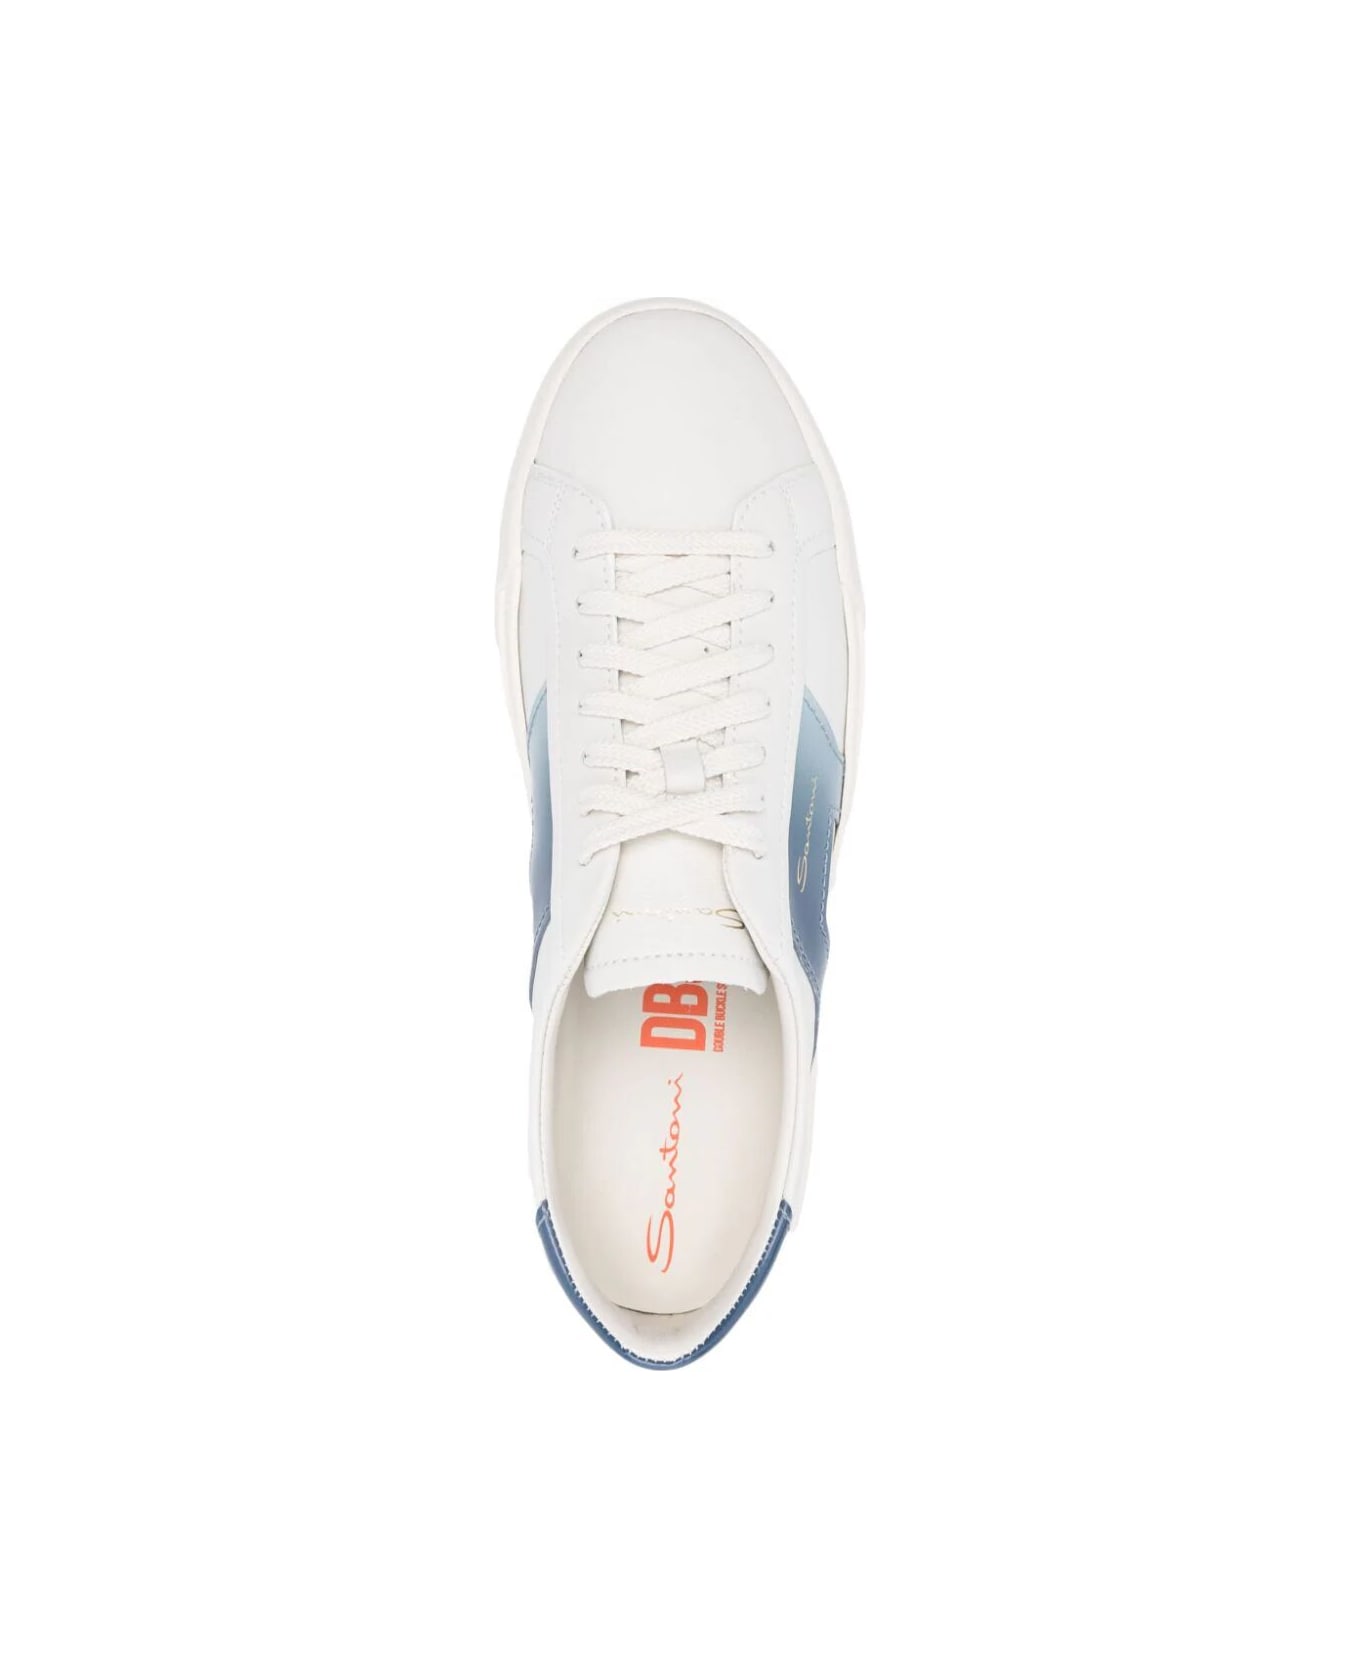 Santoni Dbs Sneakers - White